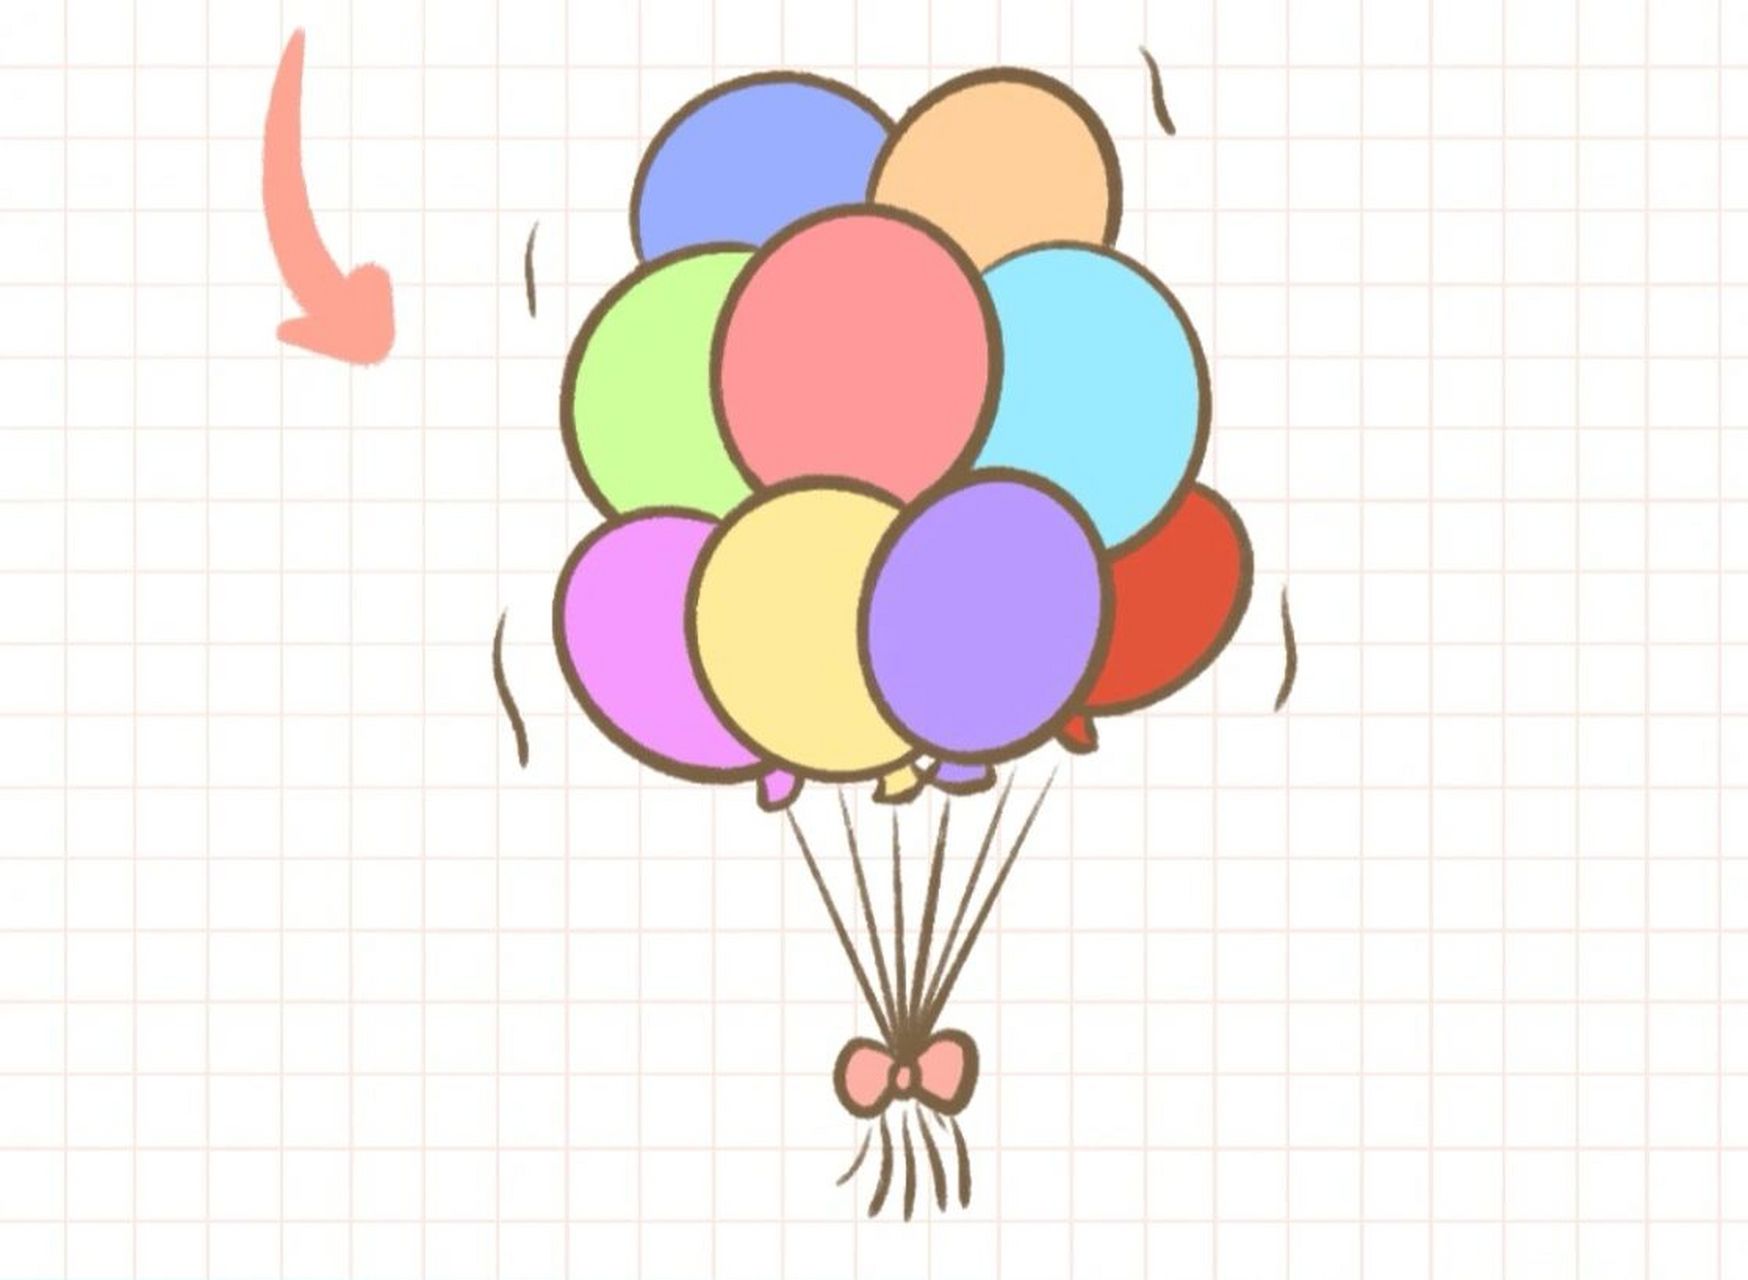 气球动力小车简笔画图片